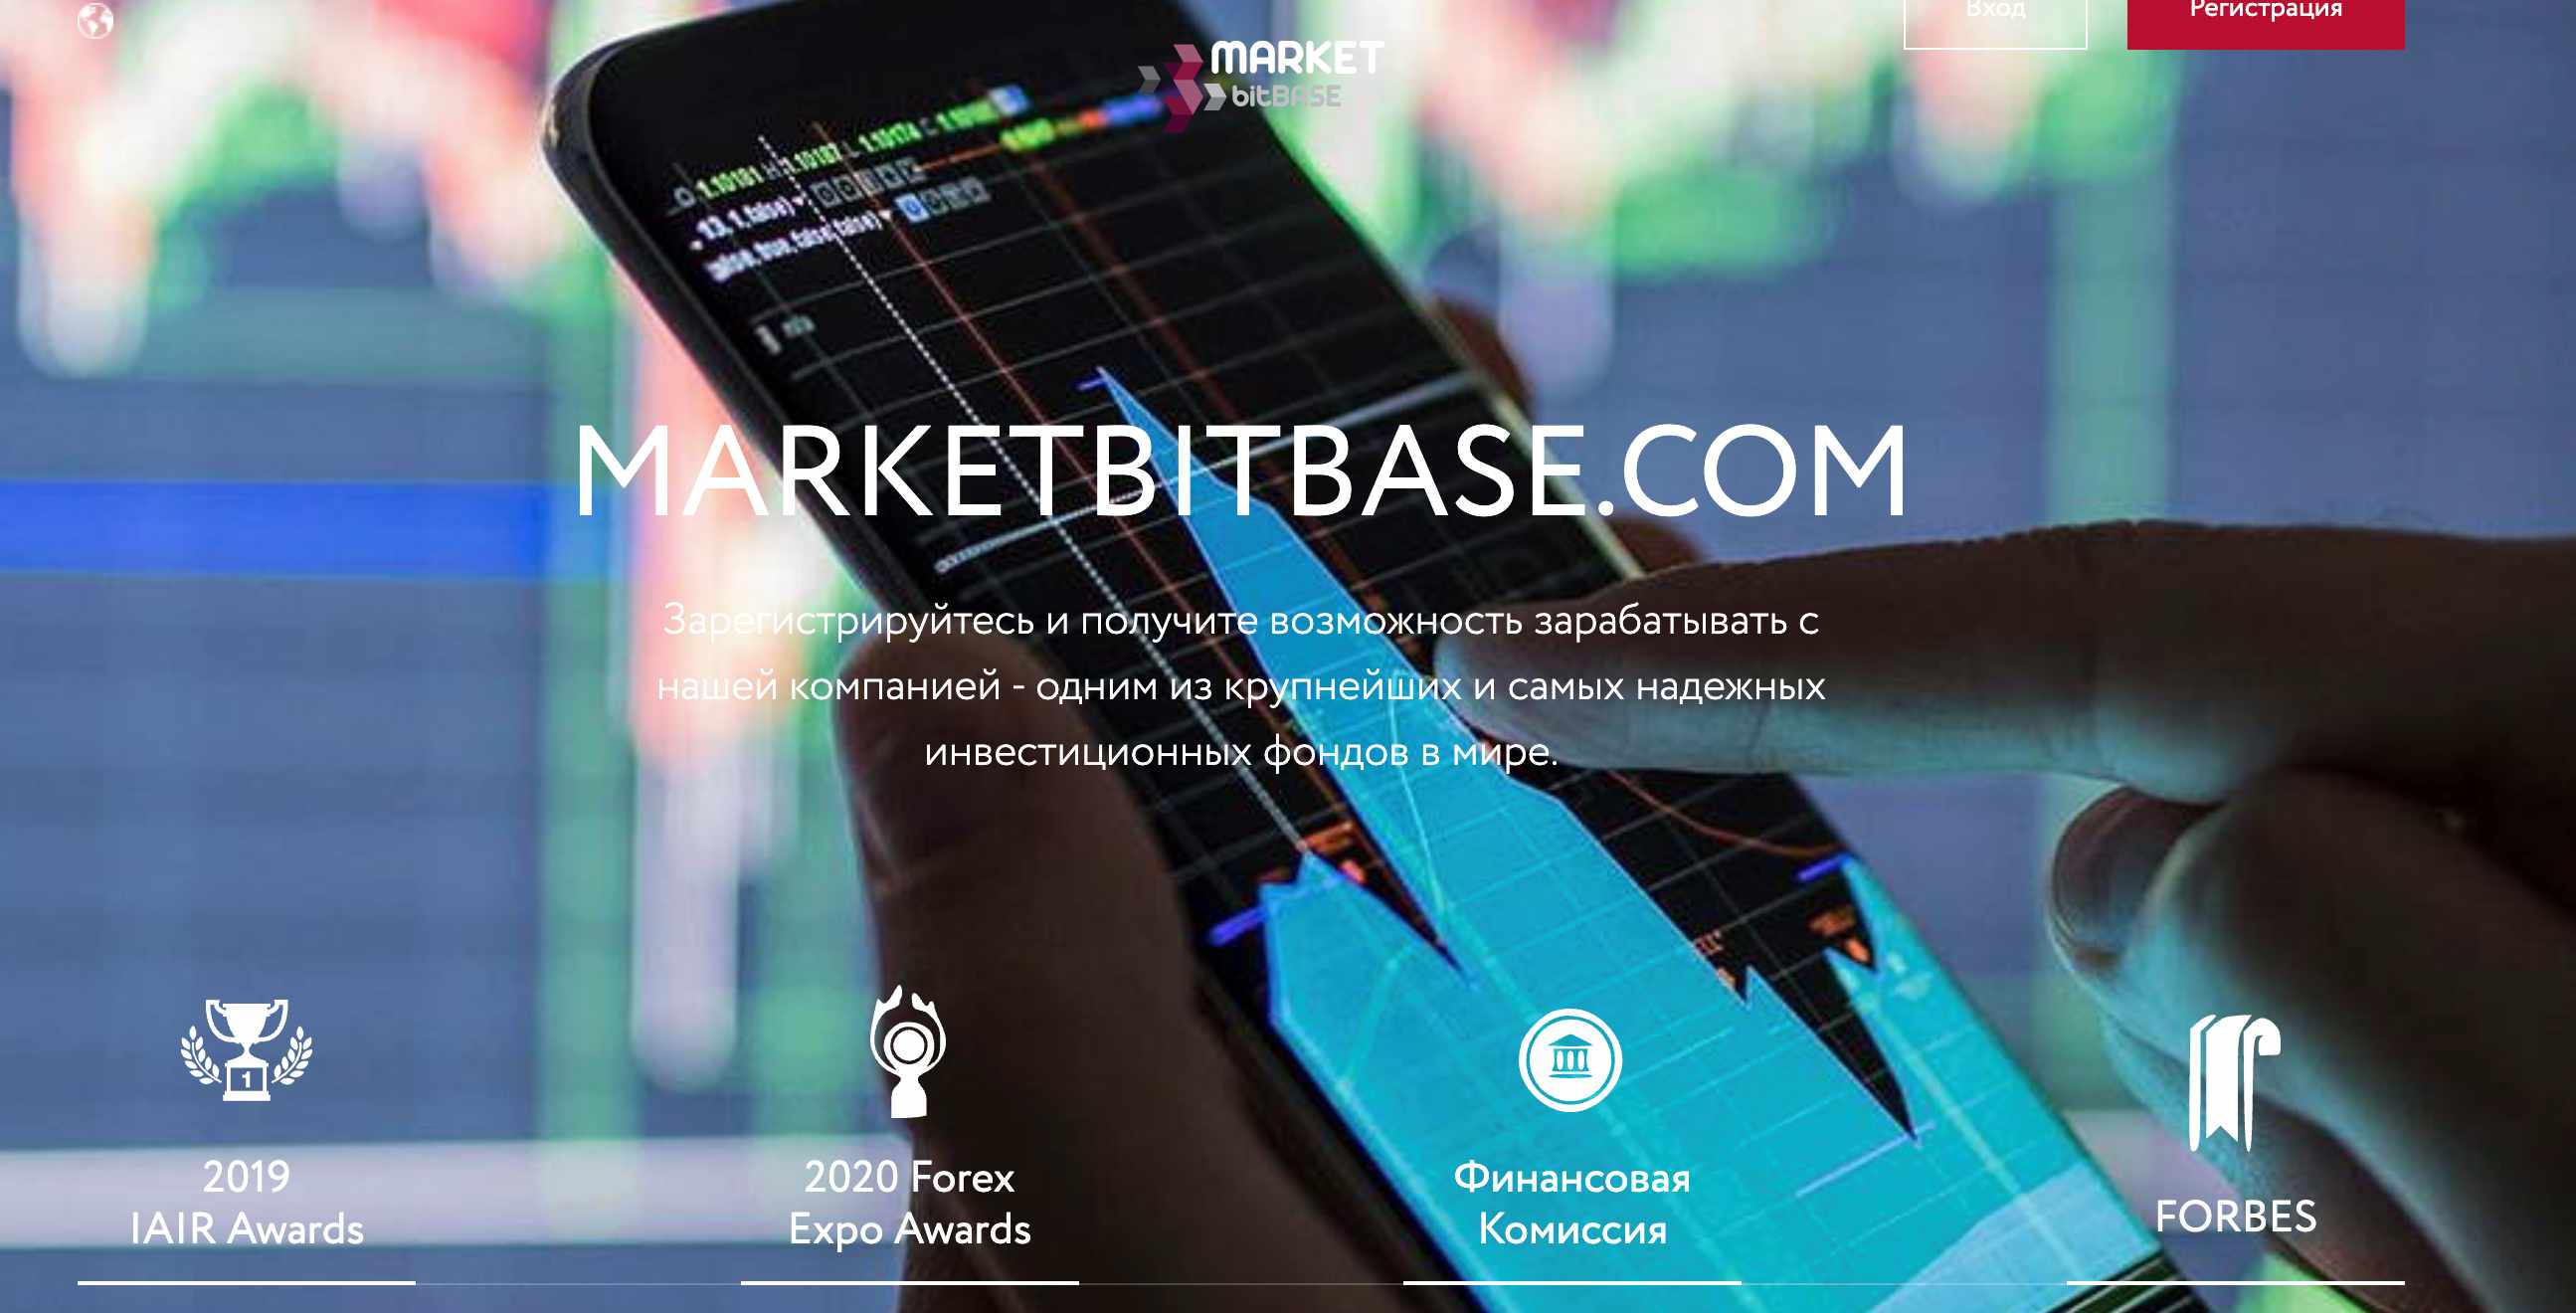 Market Bit Base